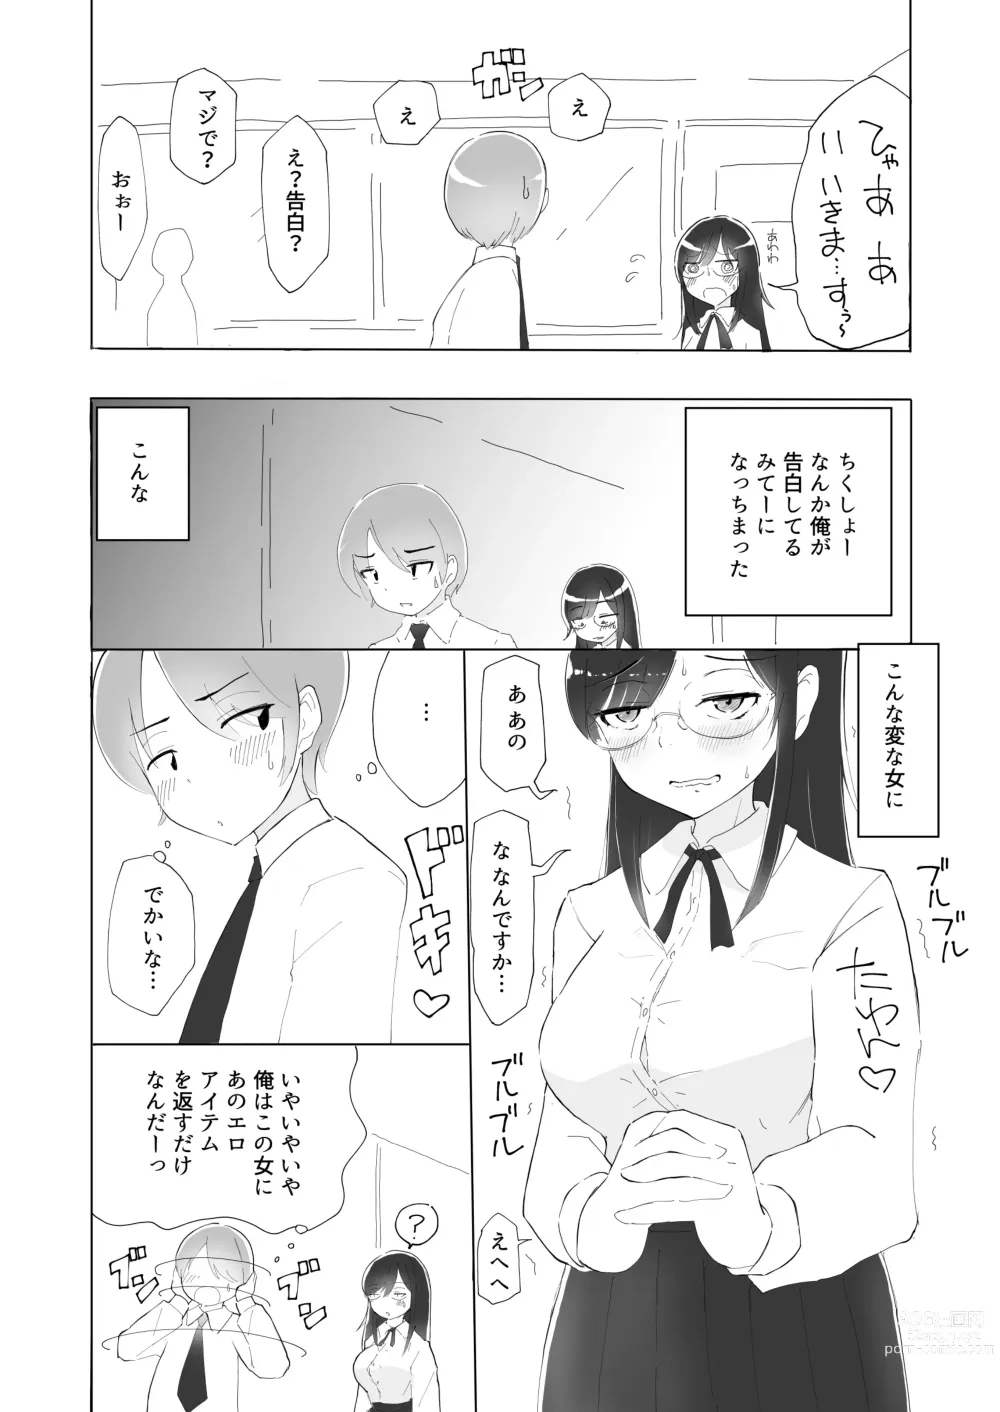 Page 7 of doujinshi Tonari no seki no Nani Kangaeteru no ka Wakaranai Inkya Joshi ni Ochinchin Omocha ni Sare Chatta Boku